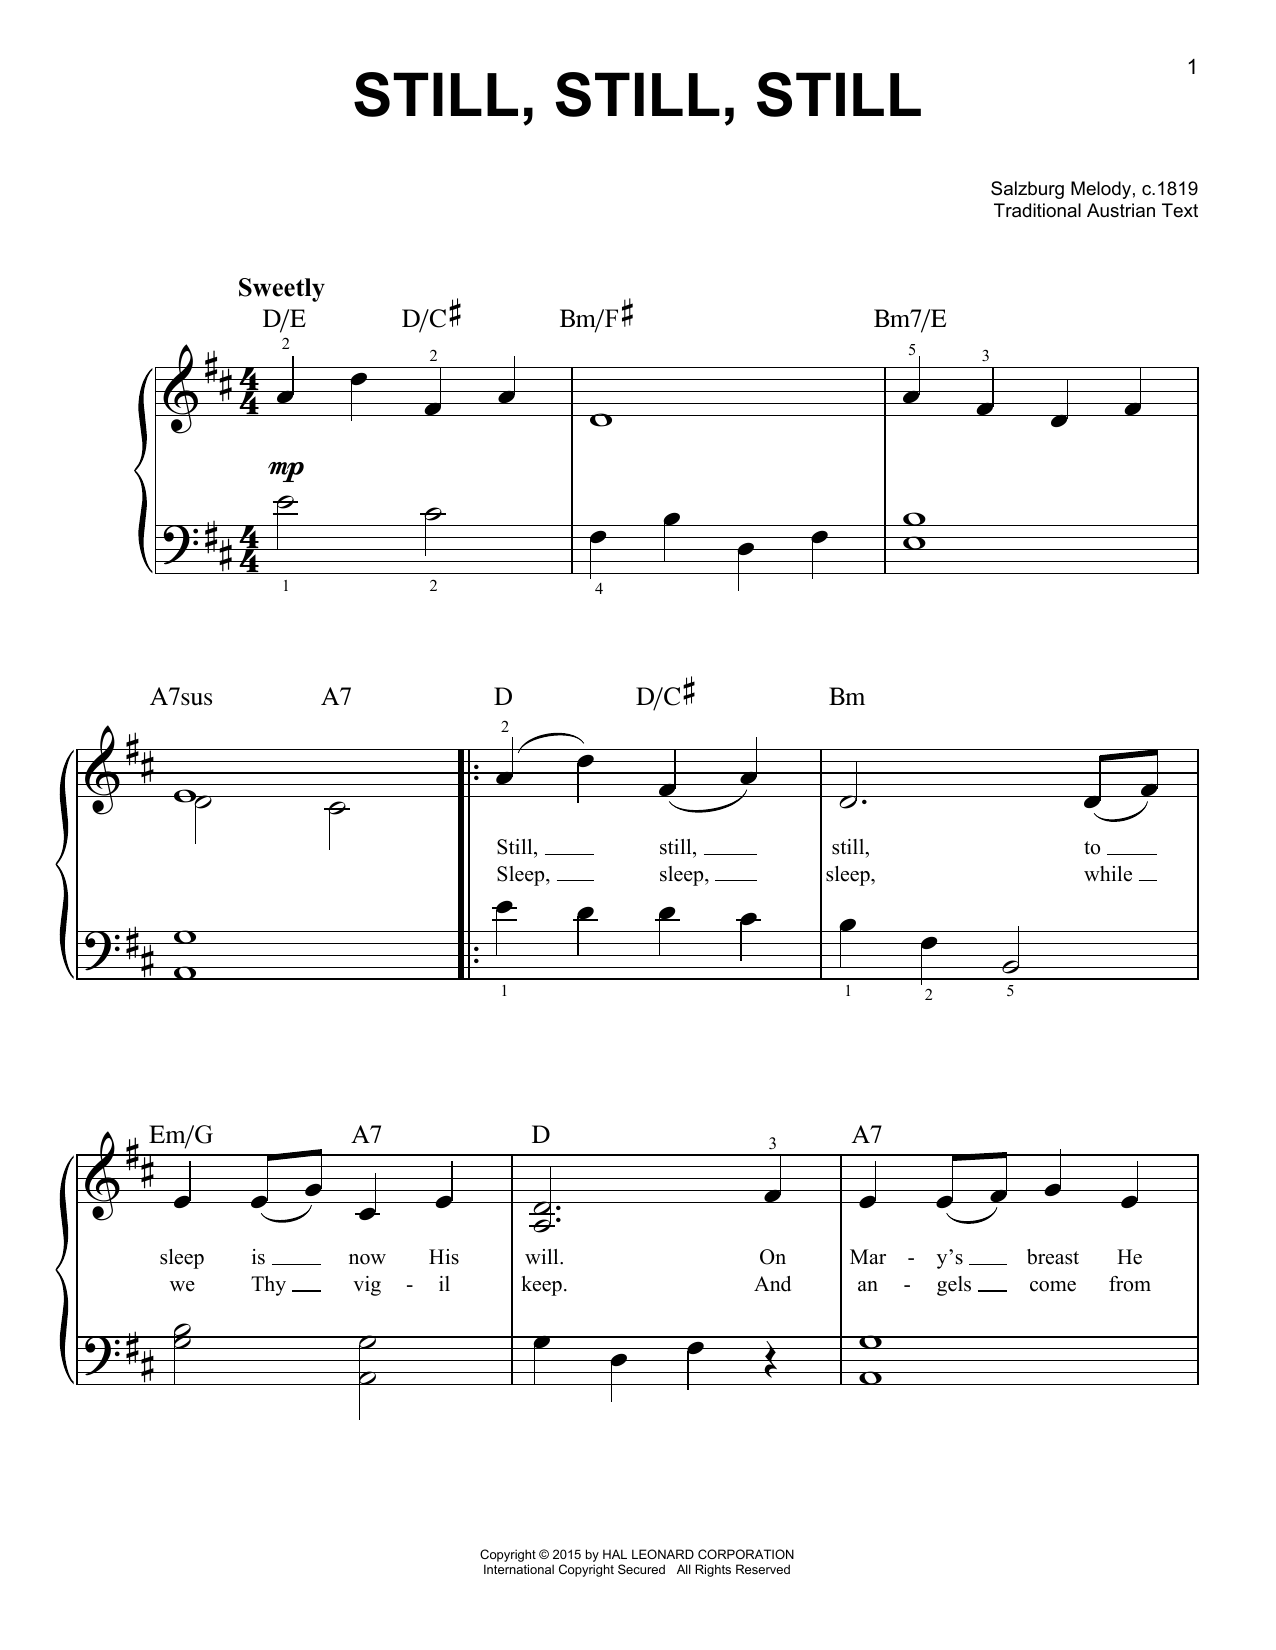 Salzburg Melody, c.1819 Still, Still, Still sheet music notes and chords arranged for Trombone Transcription